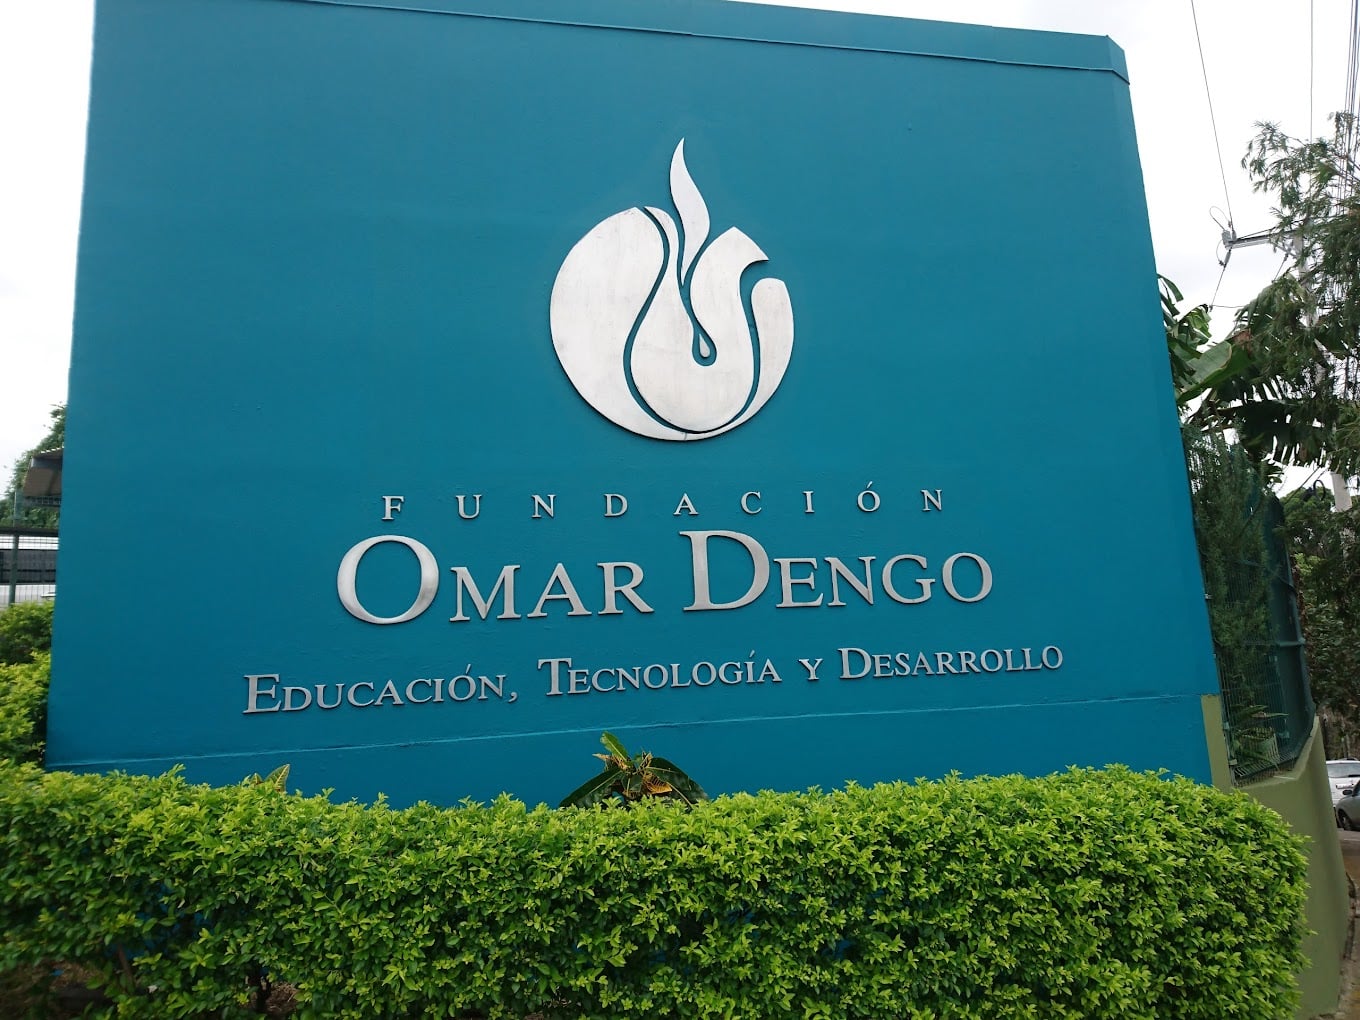 MEP y Fundación Omar Dengo sin acuerdos: hay 60 contenedores con computadoras y otros esperando ser trasladados